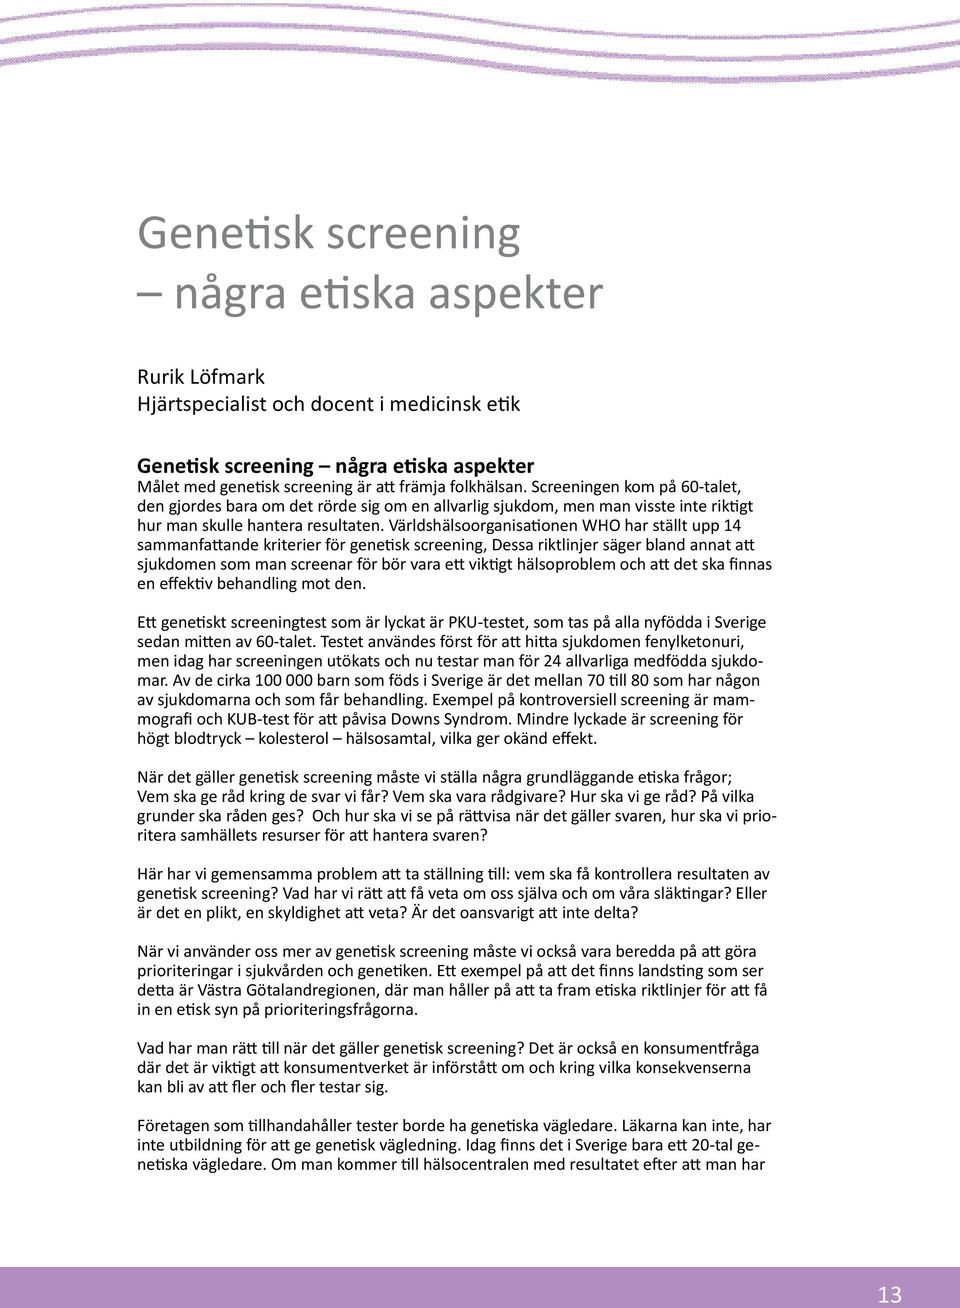 Världshälsoorganisationen WHO har ställt upp 14 sammanfattande kriterier för genetisk screening, Dessa riktlinjer säger bland annat att sjukdomen som man screenar för bör vara ett viktigt